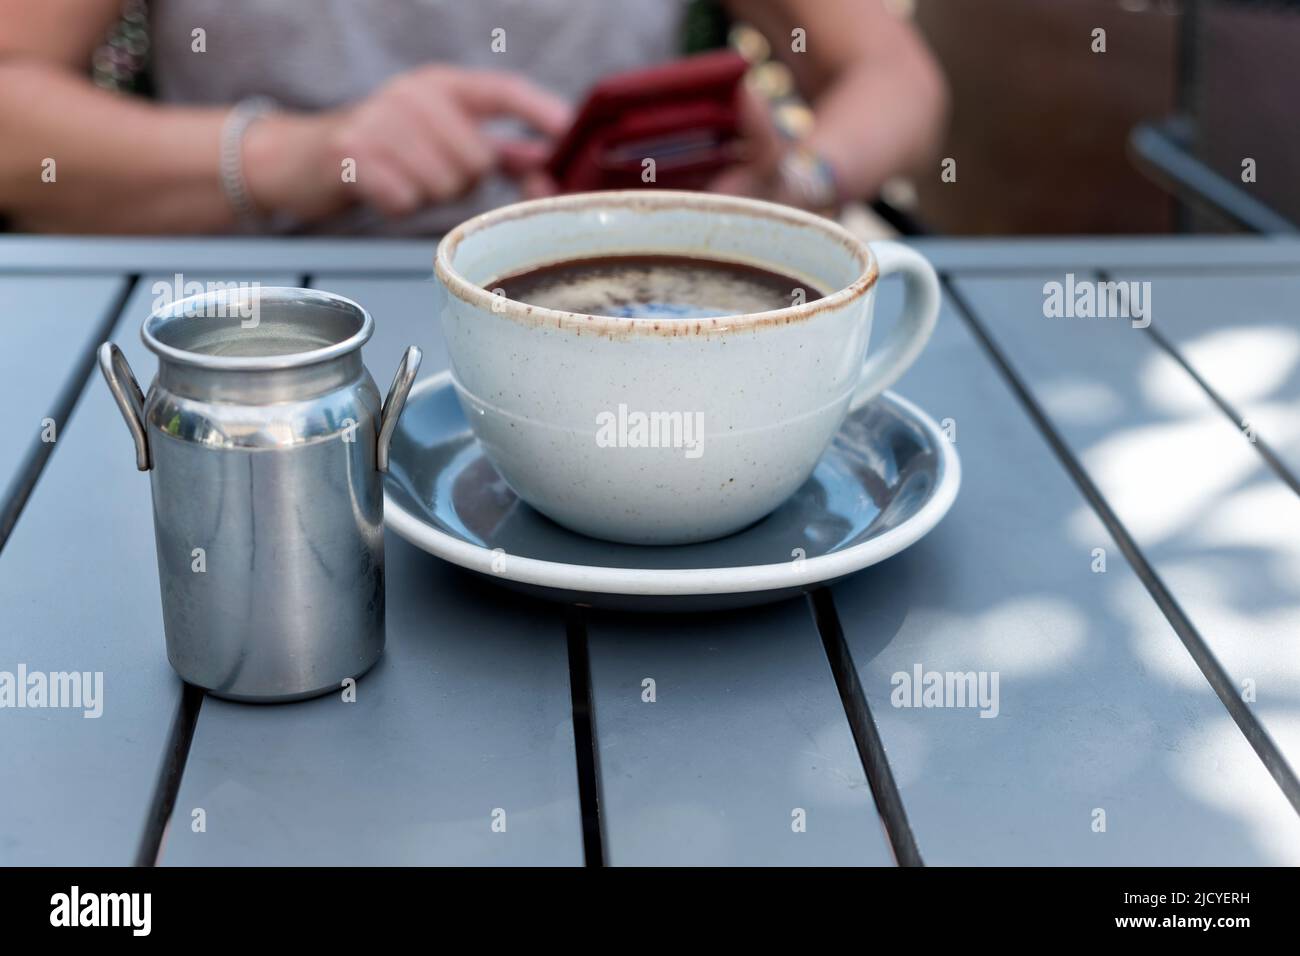 Una mujer está ocupada enviando mensajes de texto en su móvil mientras espera una taza de café recién hecha para enfriar. Ella está sentada en una mesa de café al aire libre en una noche de verano Foto de stock